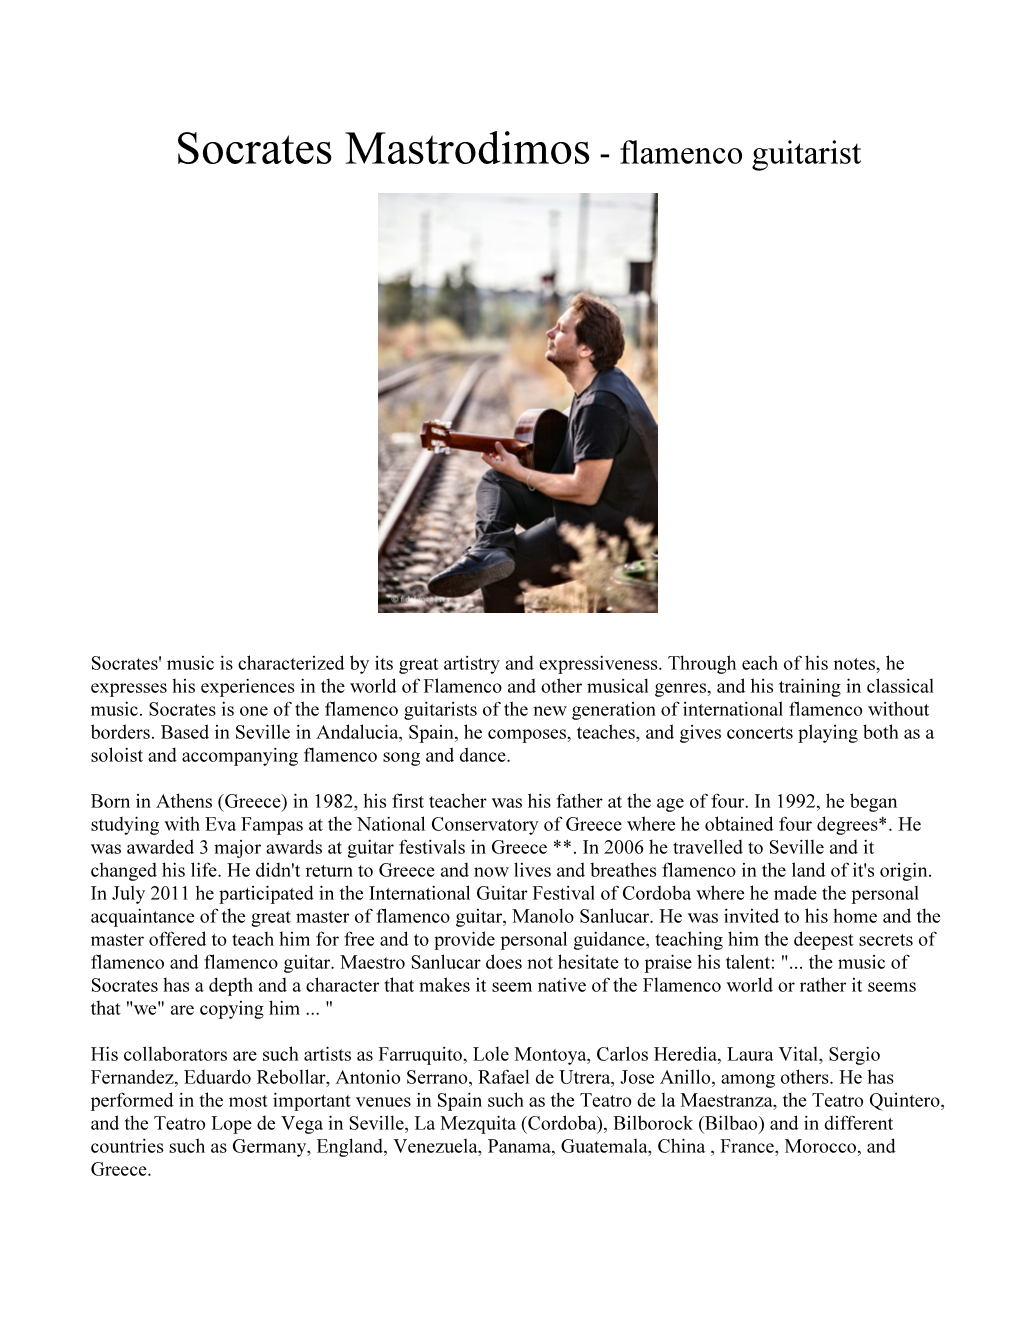 Socrates Mastrodimos- Flamenco Guitarist